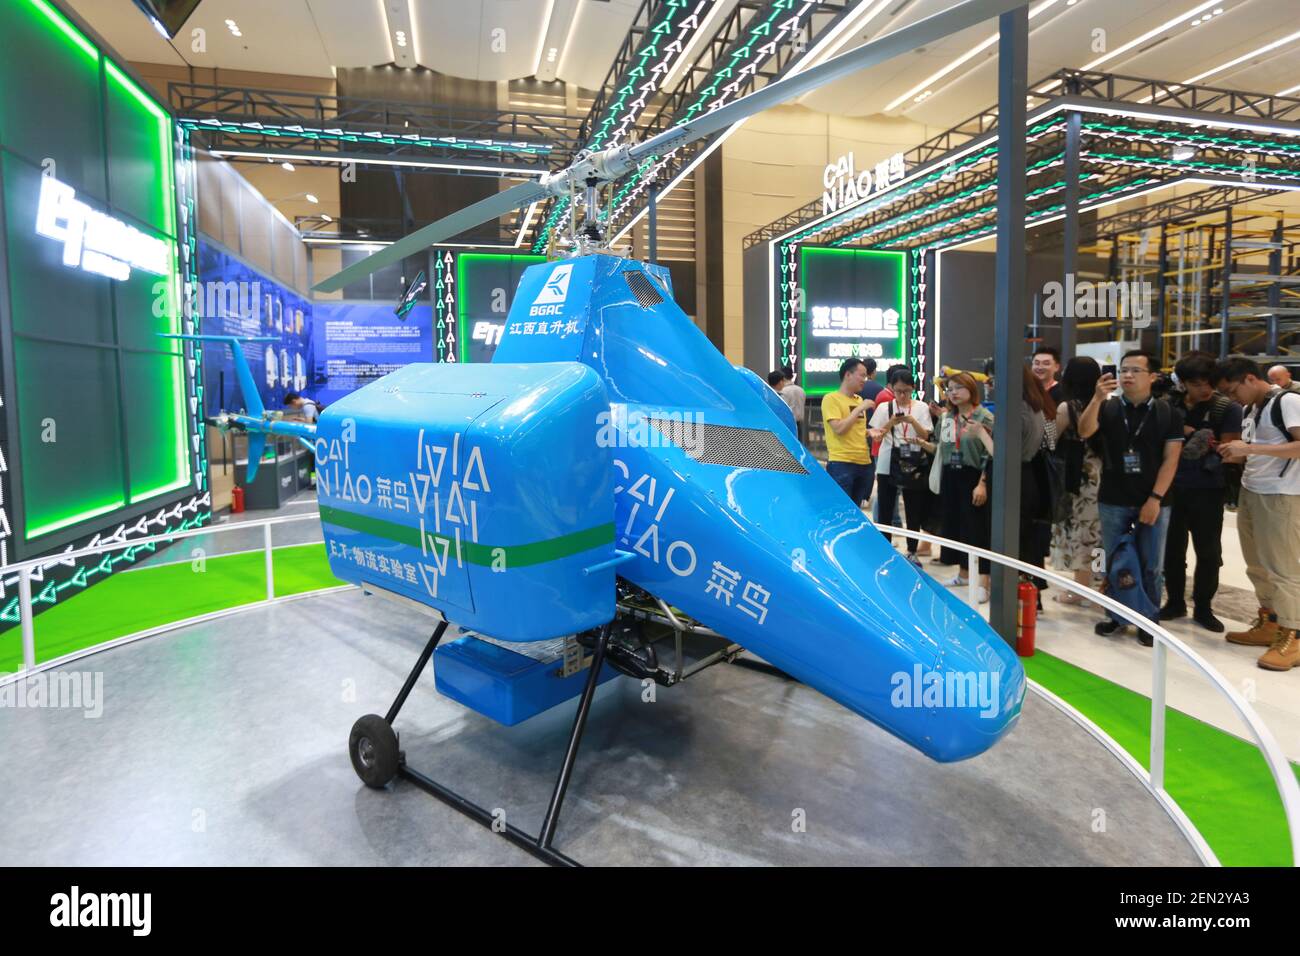 Un hélicoptère de livraison express sans pilote appartenant à Cainiao, la  branche logistique d'Alibaba, est exposé lors du Global Smart Logistics  Summit 2019 à Hangzhou, dans la province de Zhejiang, en Chine